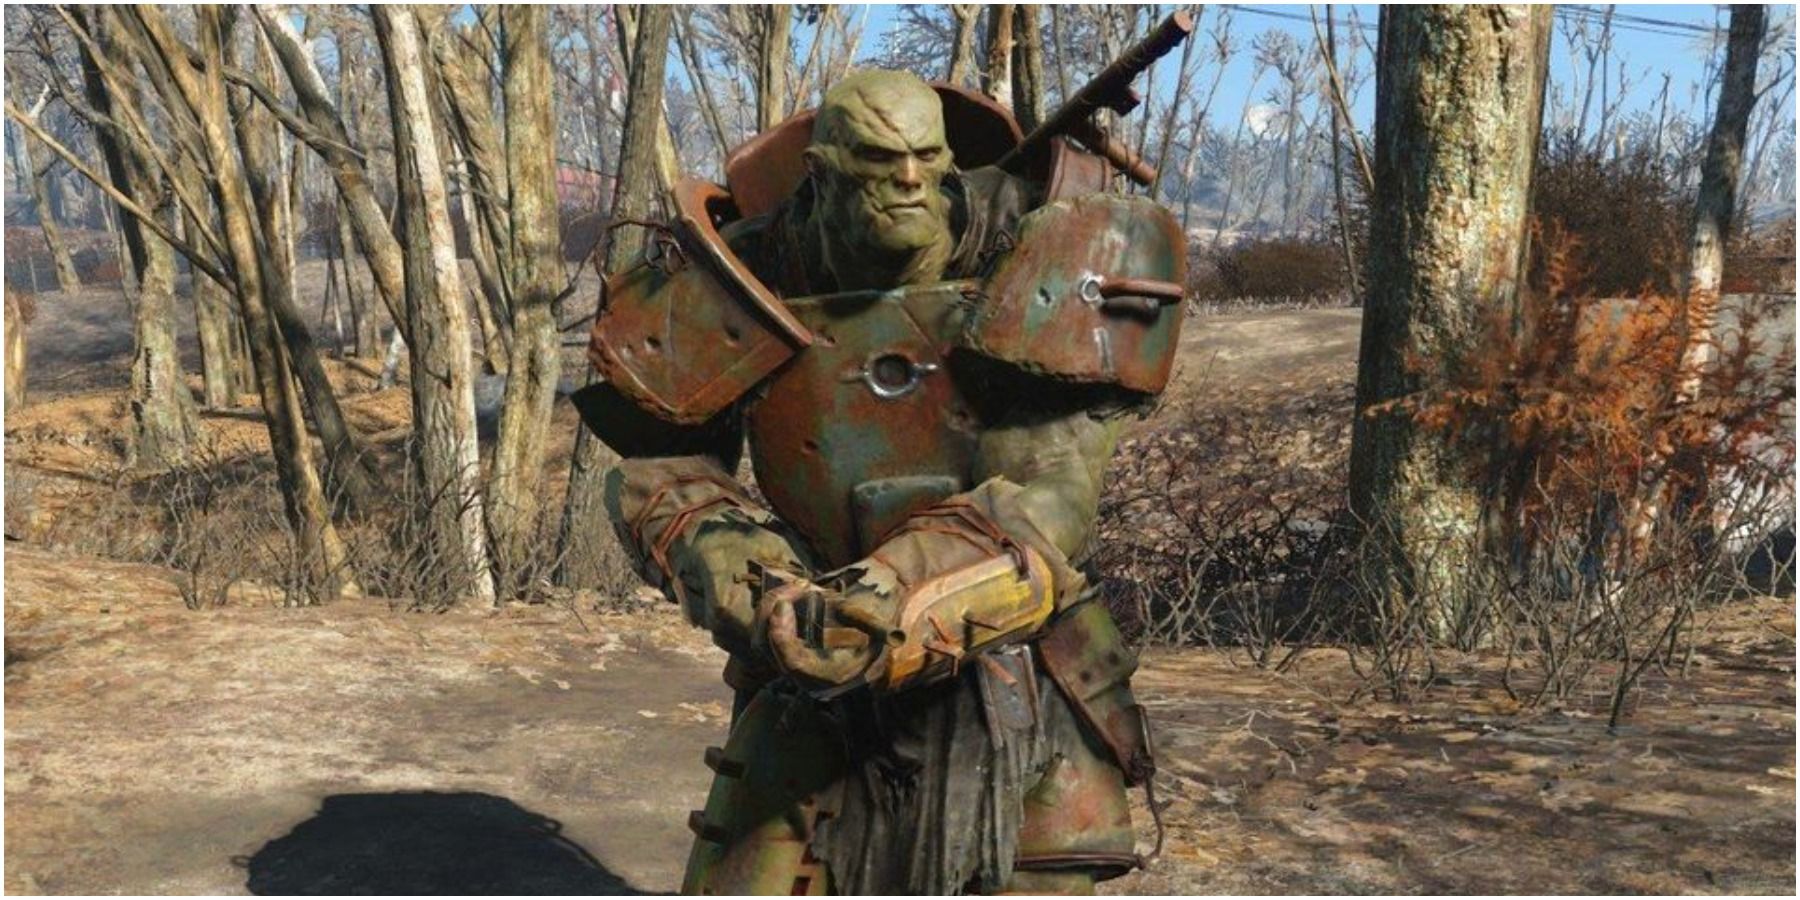 Super Mutant in Fallout 4.